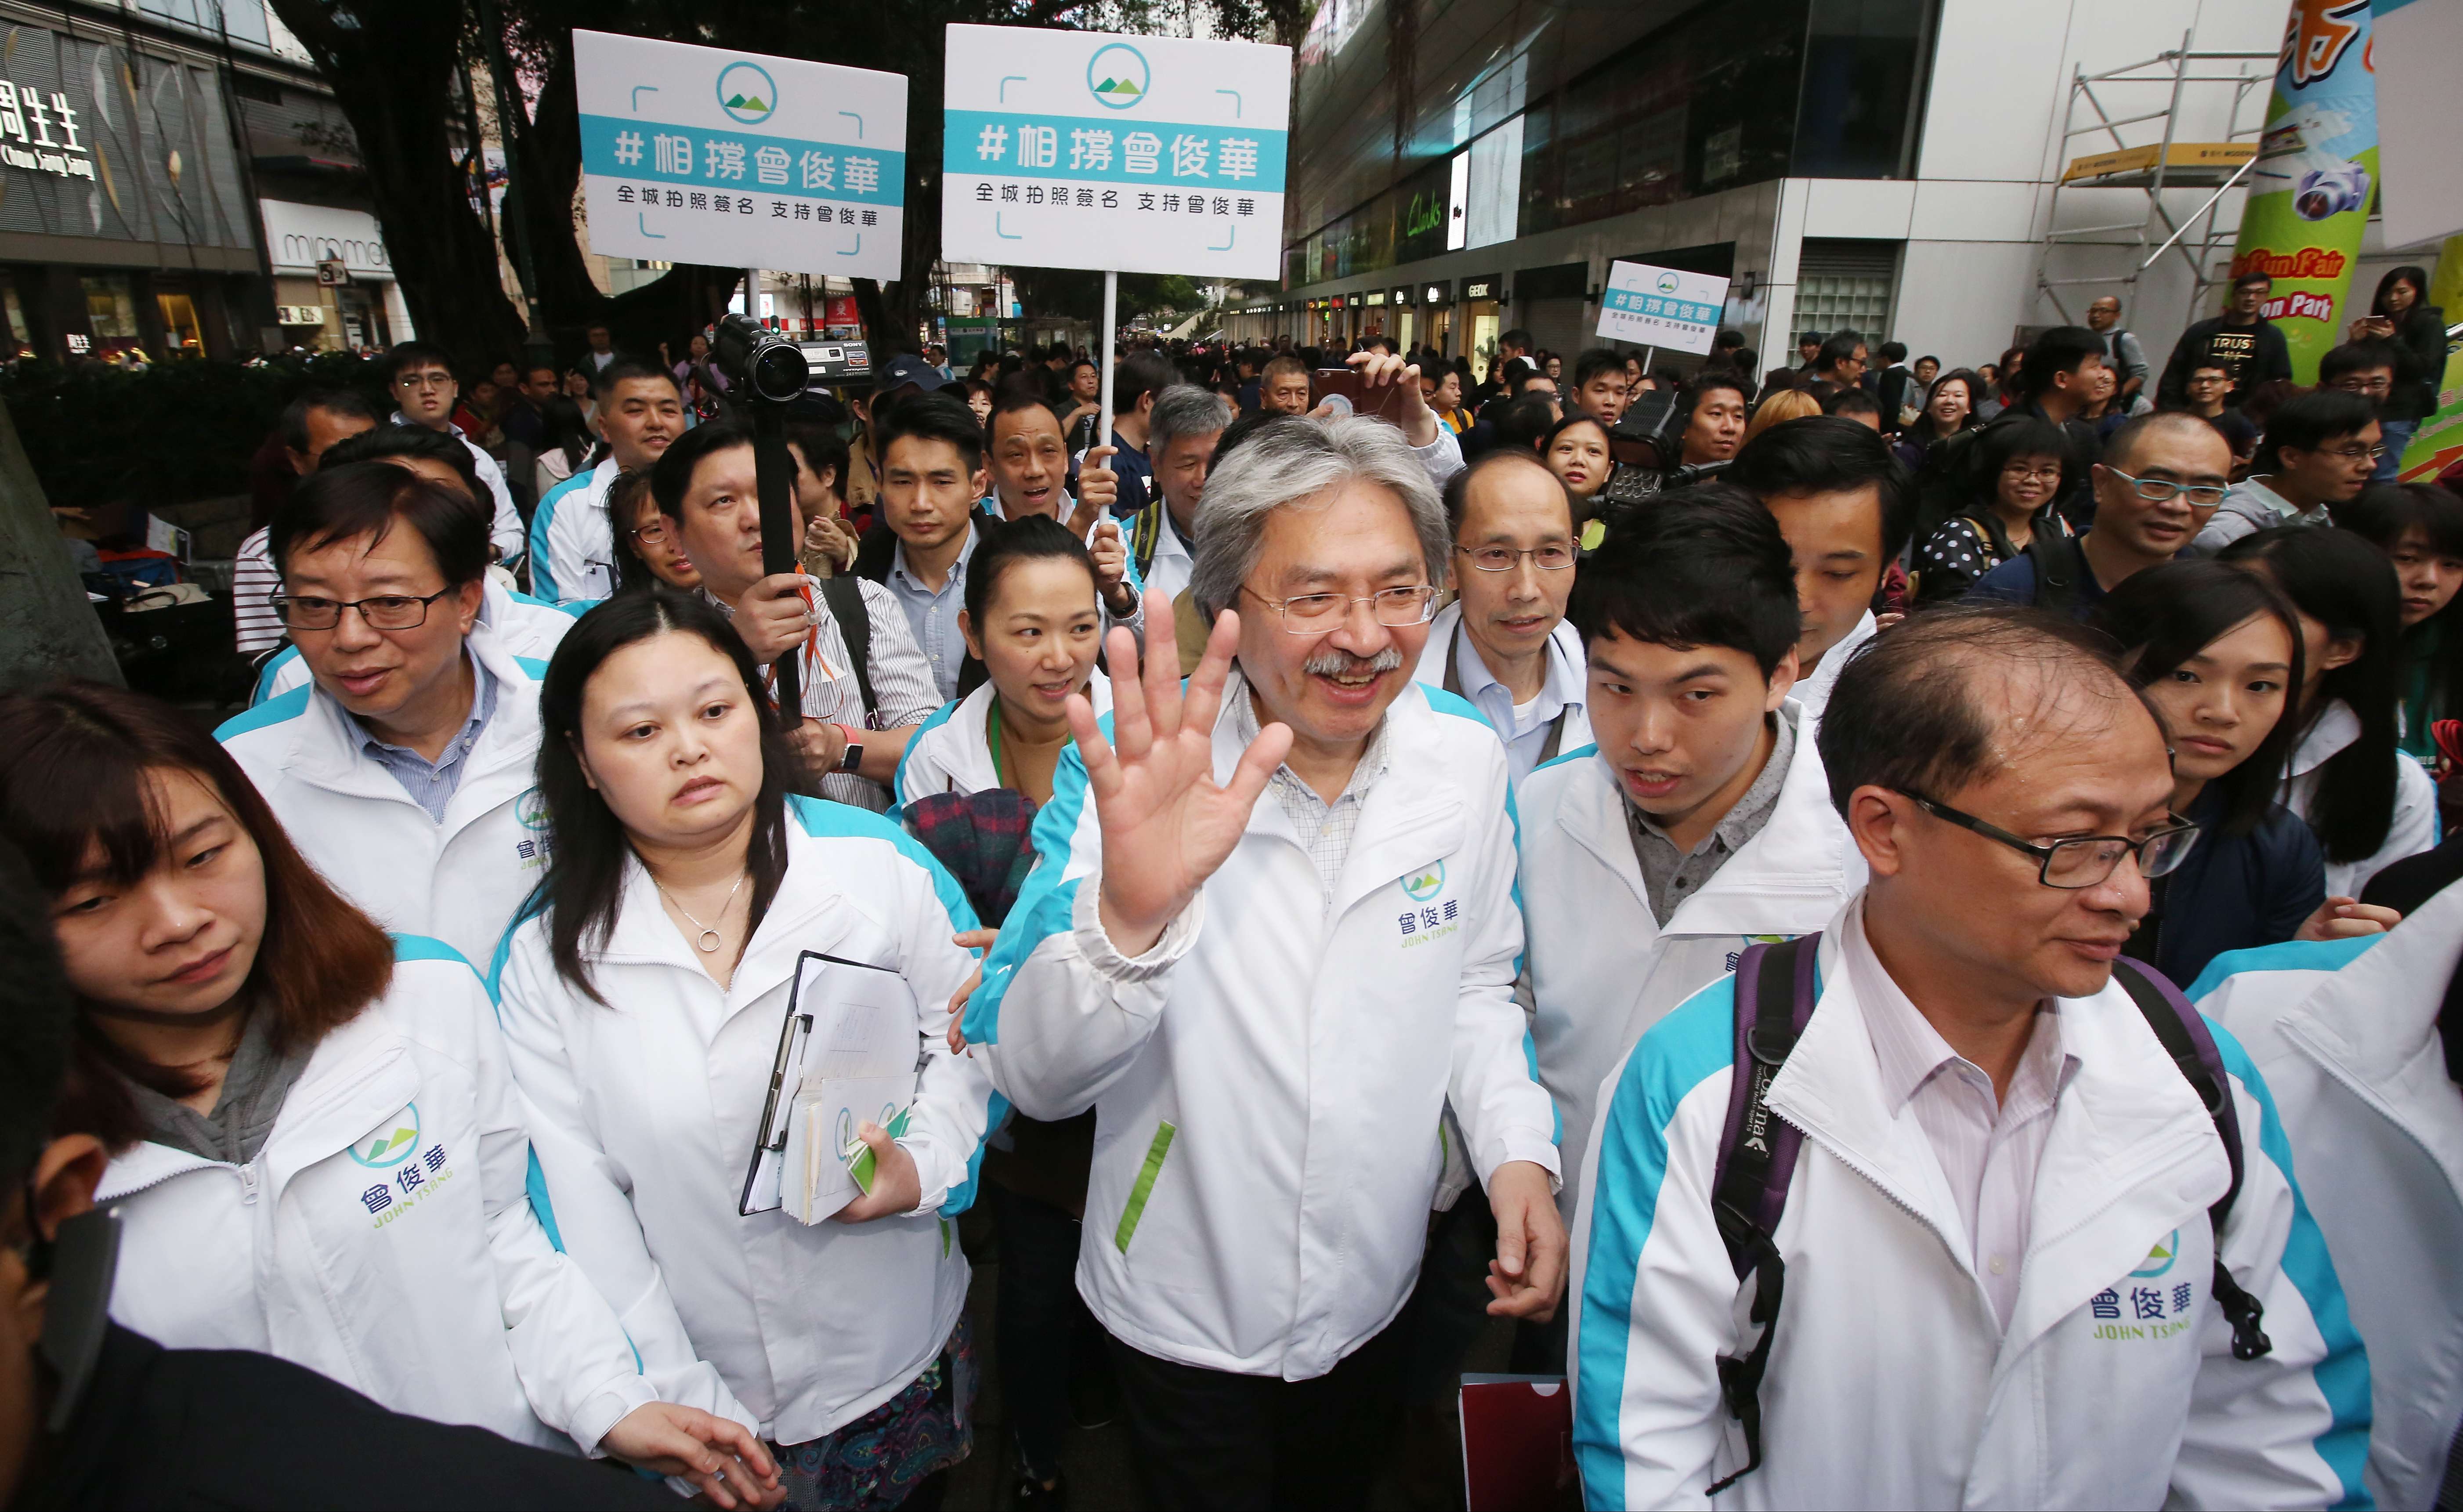 John Tsang Chun-wah spent HK$2.3 million on his website and social media during his election bid. Photo: Edward Wong